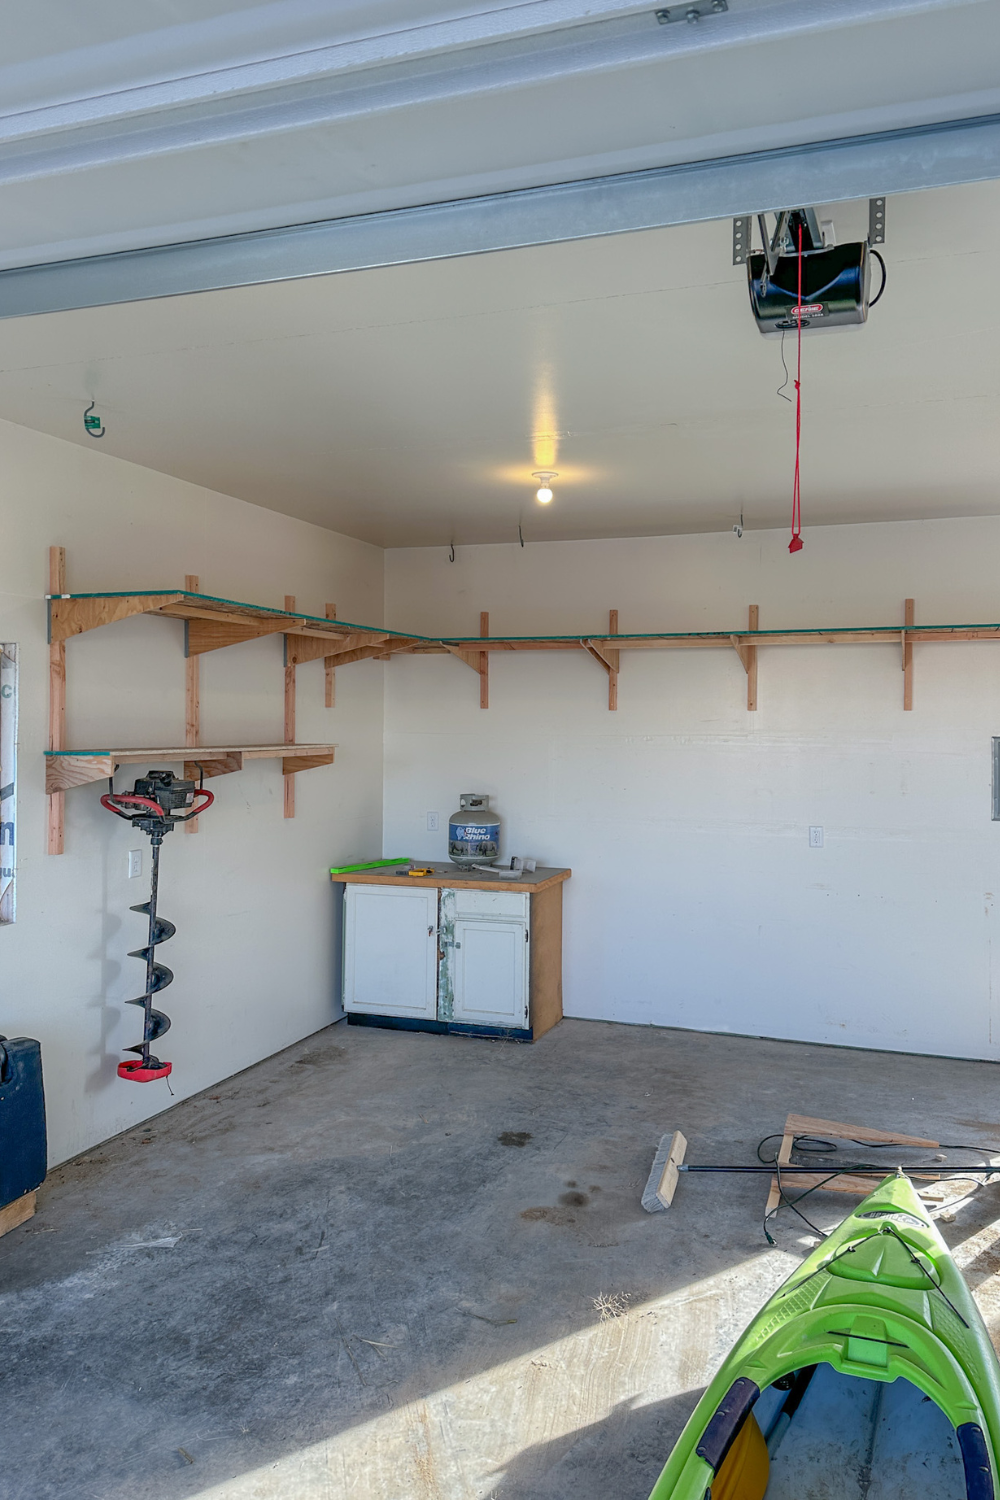 DIY Garage Shelves Under $100